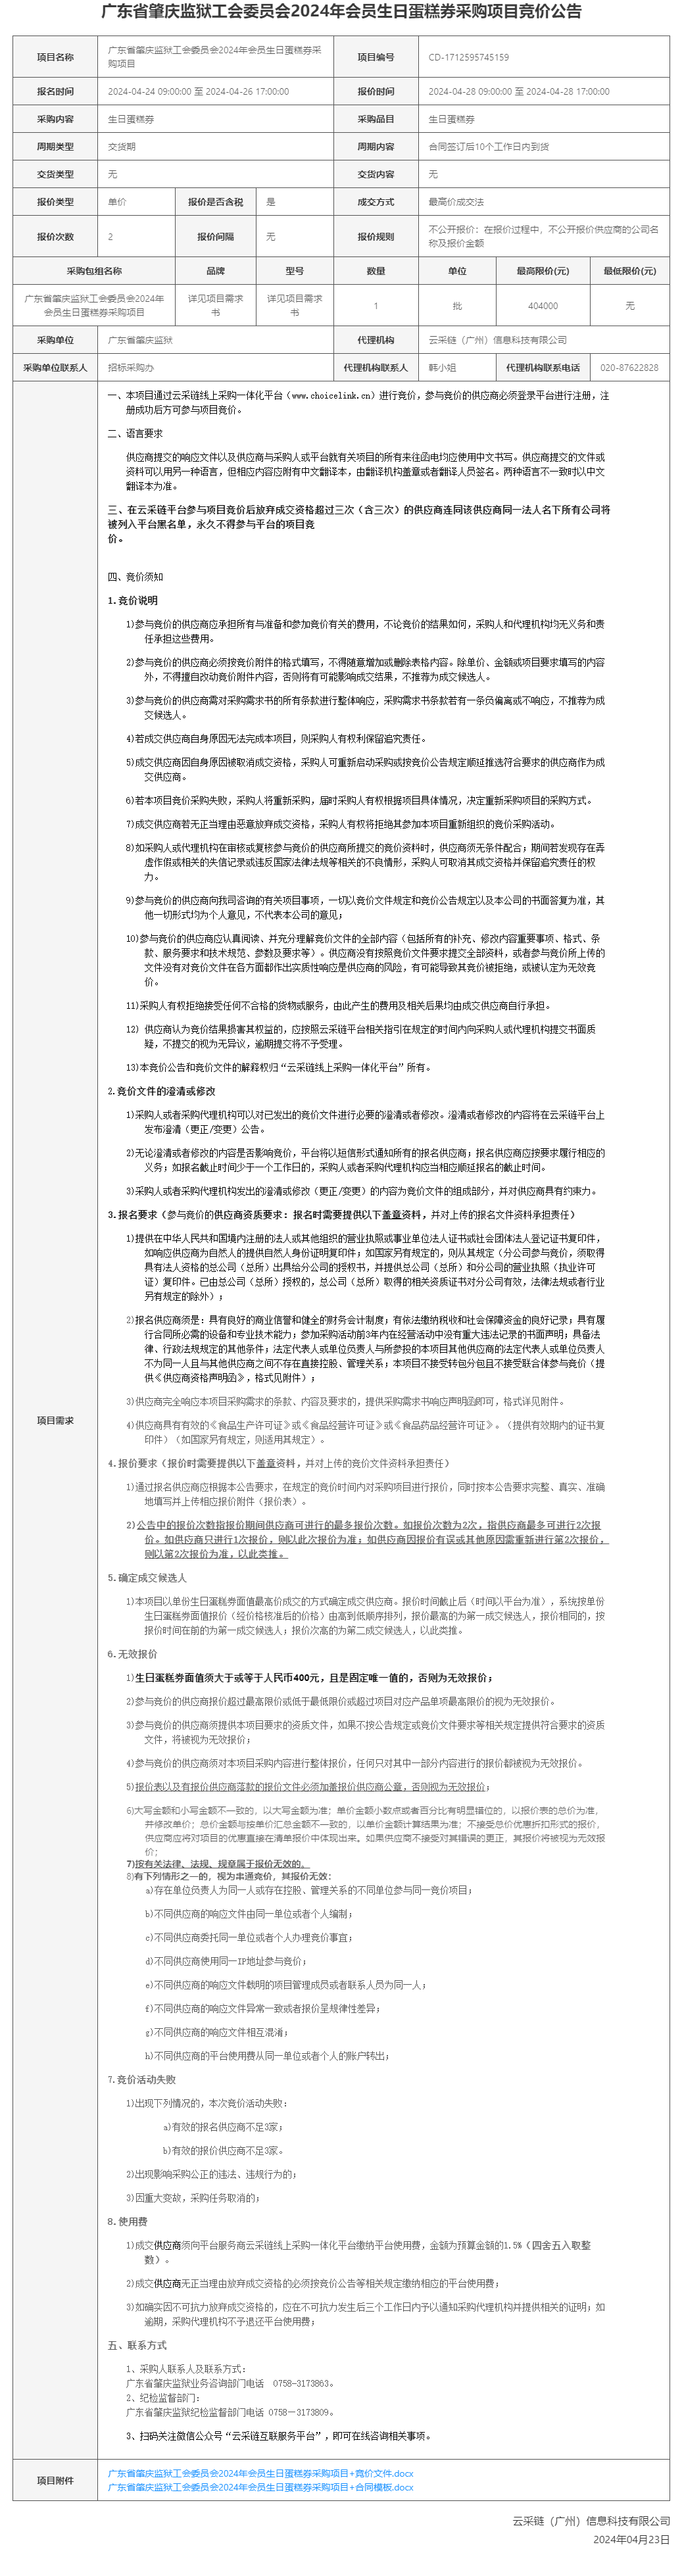 广东省肇庆监狱工会委员会2024年会员生日蛋糕券采购项目竞价公告.png